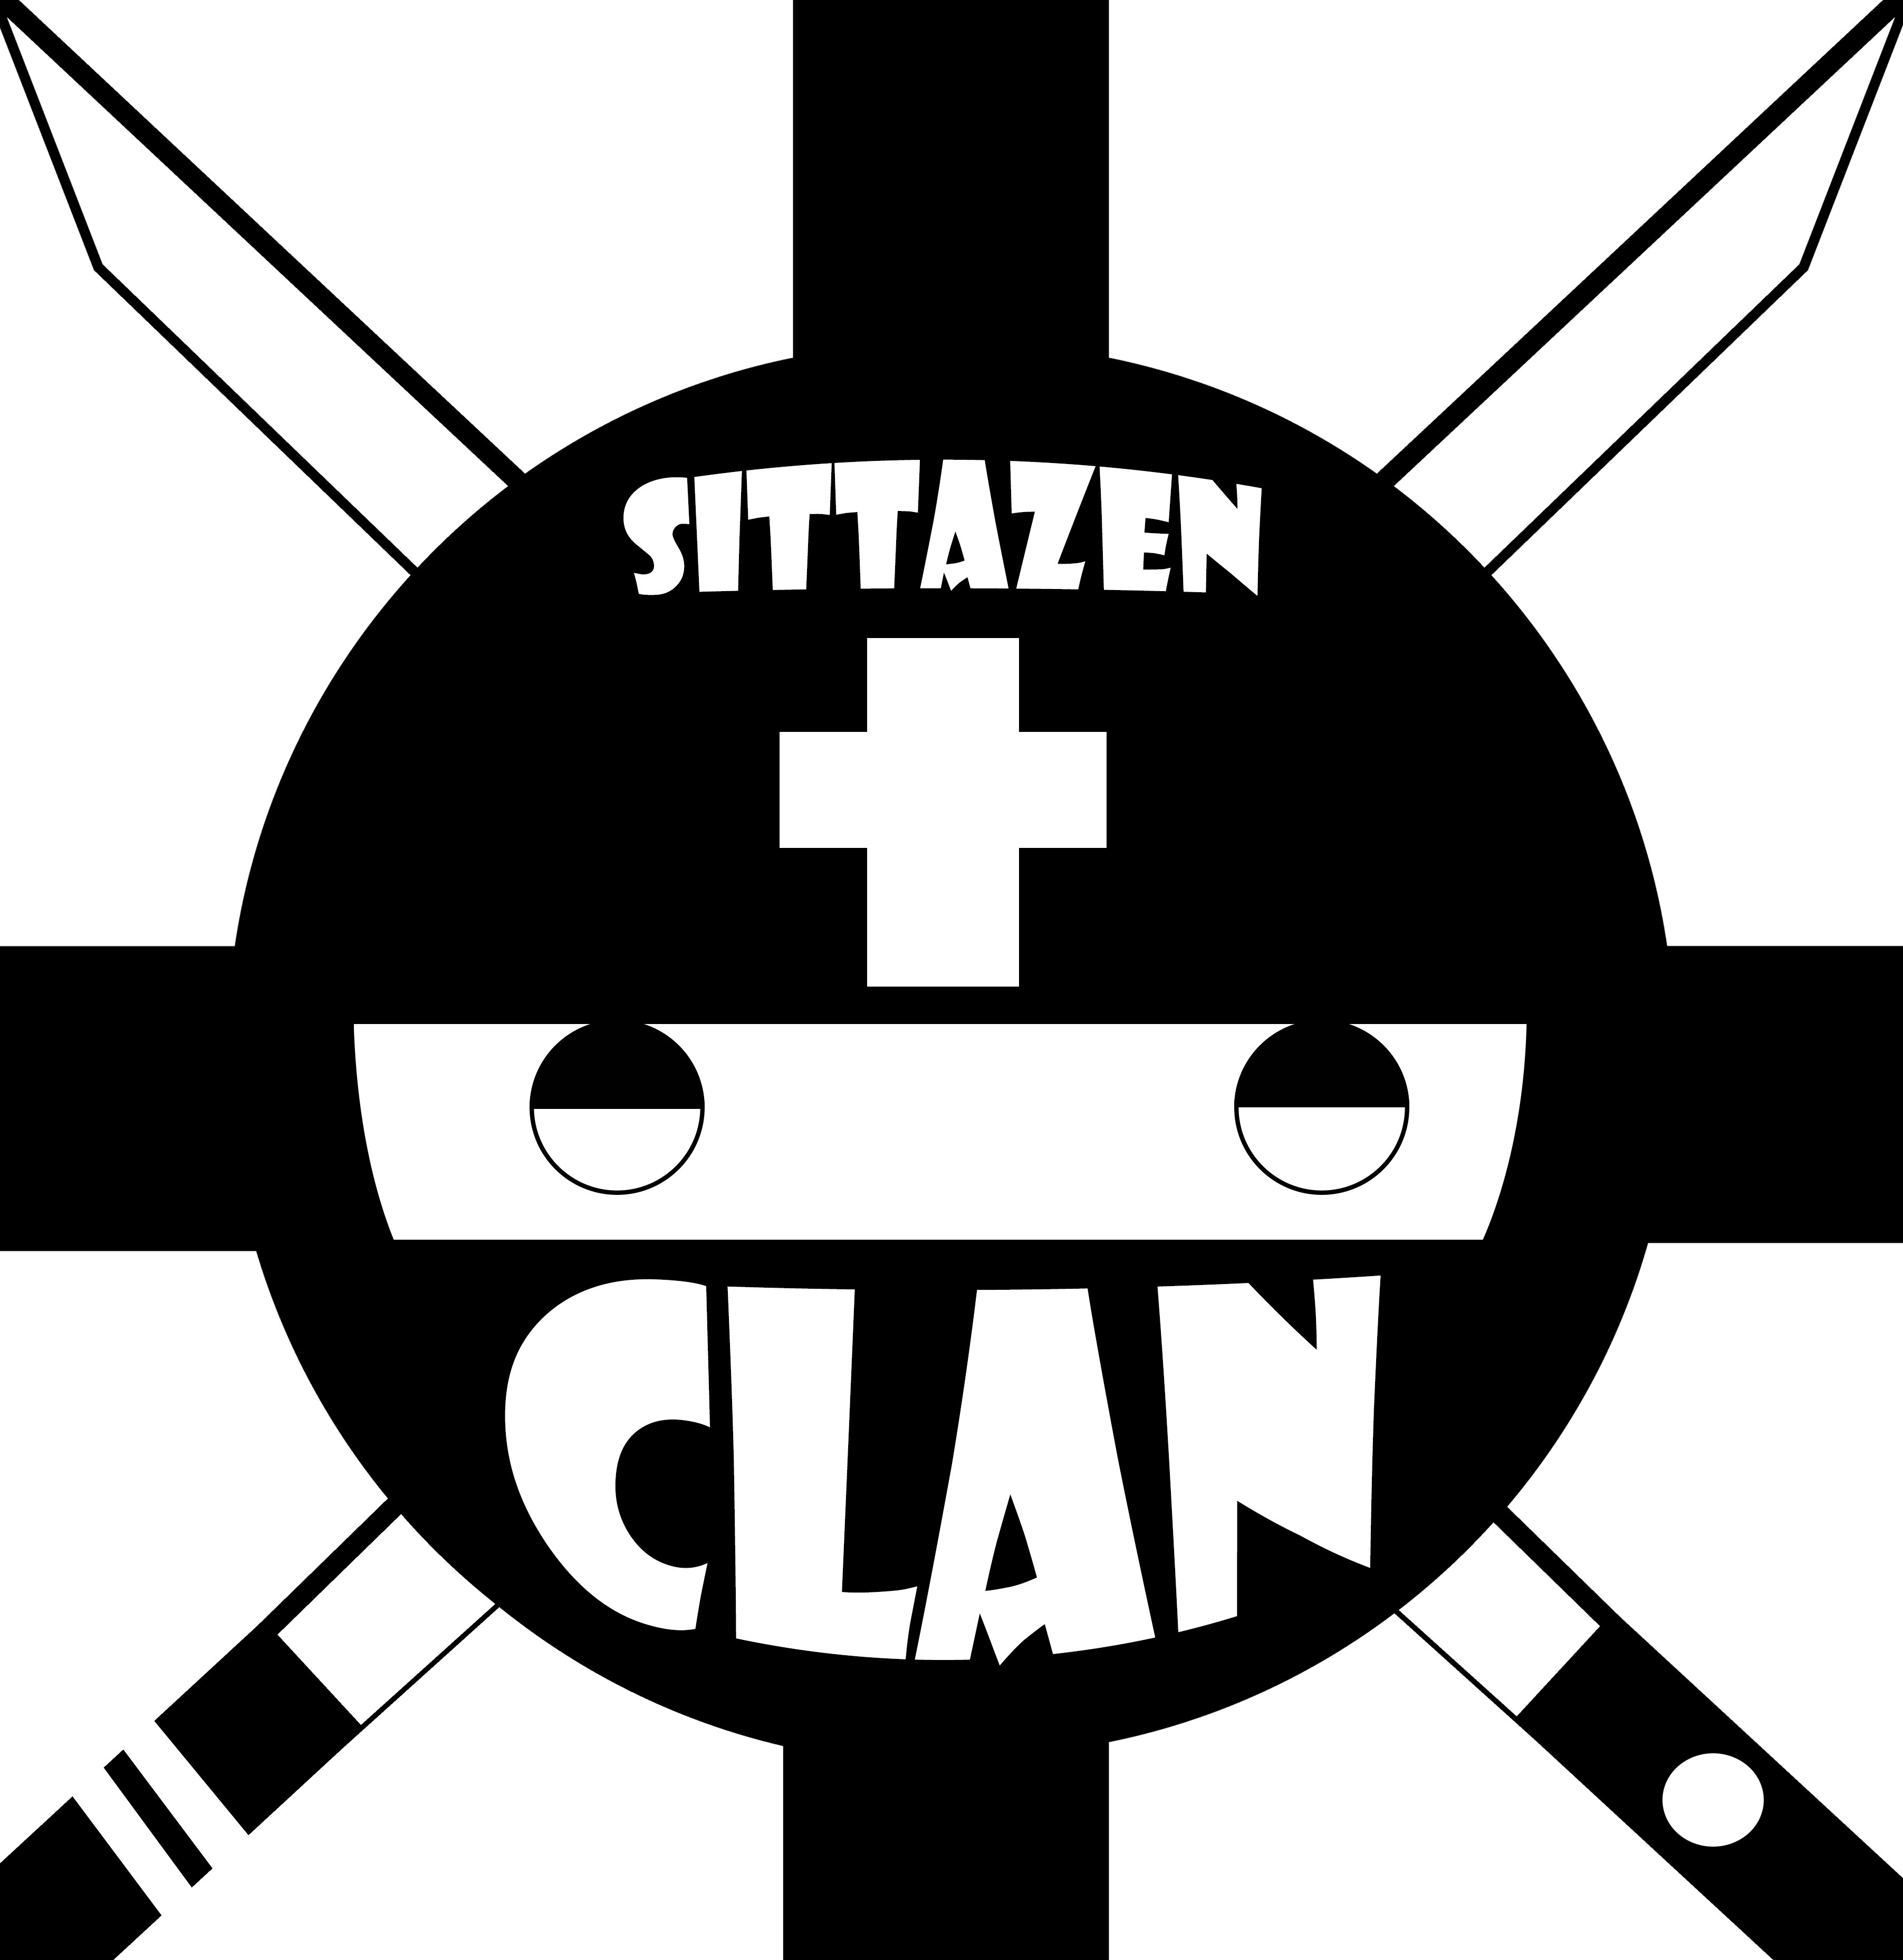 SITTAZEN CLAN